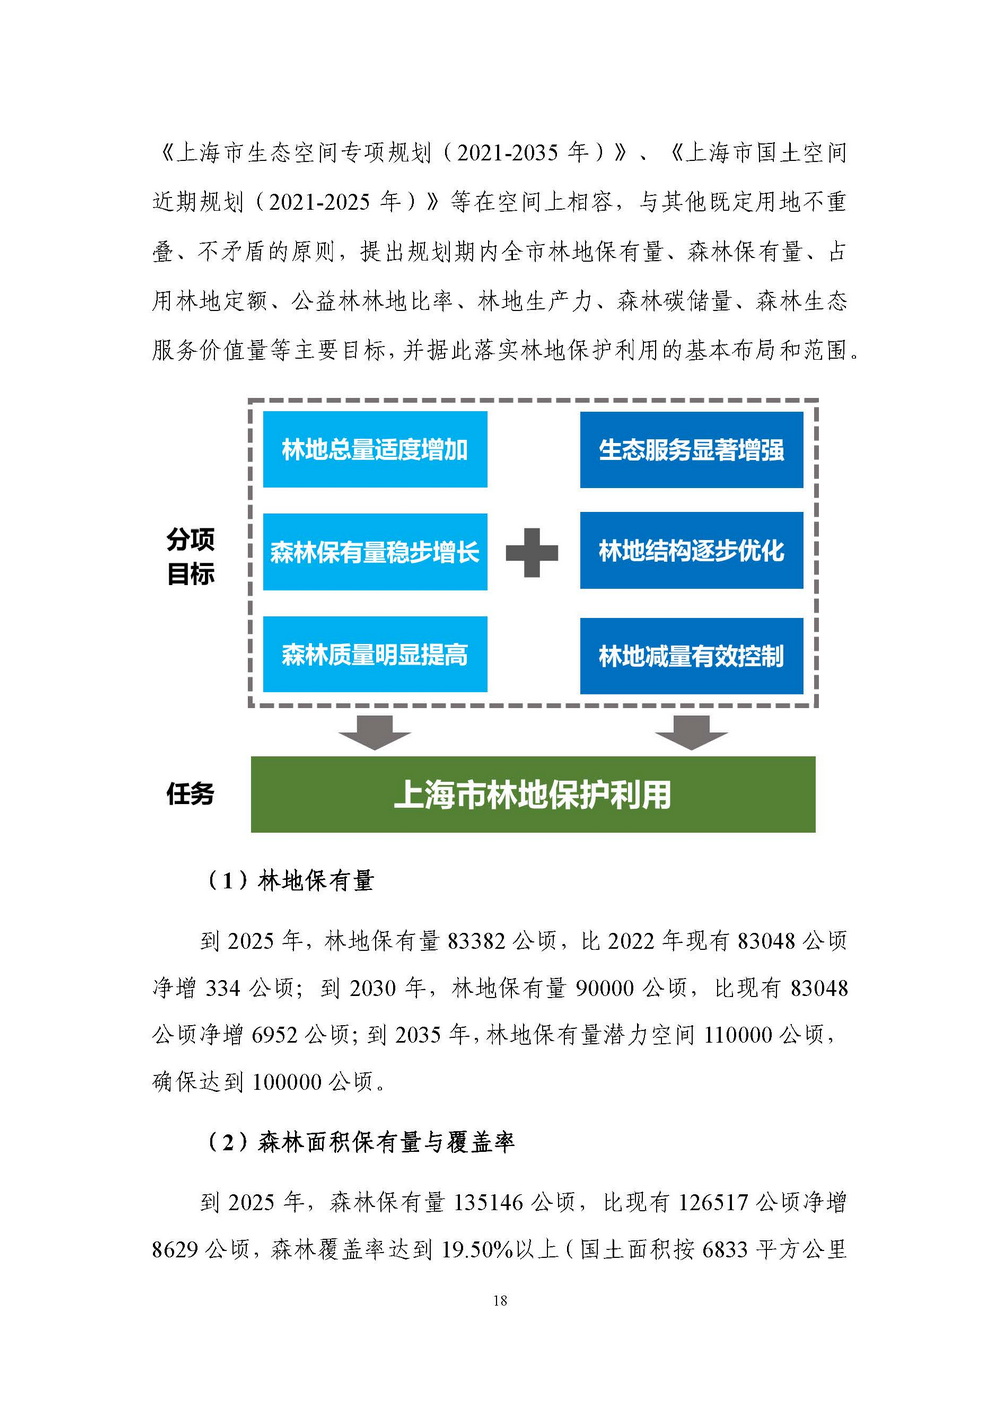 上海市森林和林地保护利用规划文本 公开稿 附图_页面_21.jpg